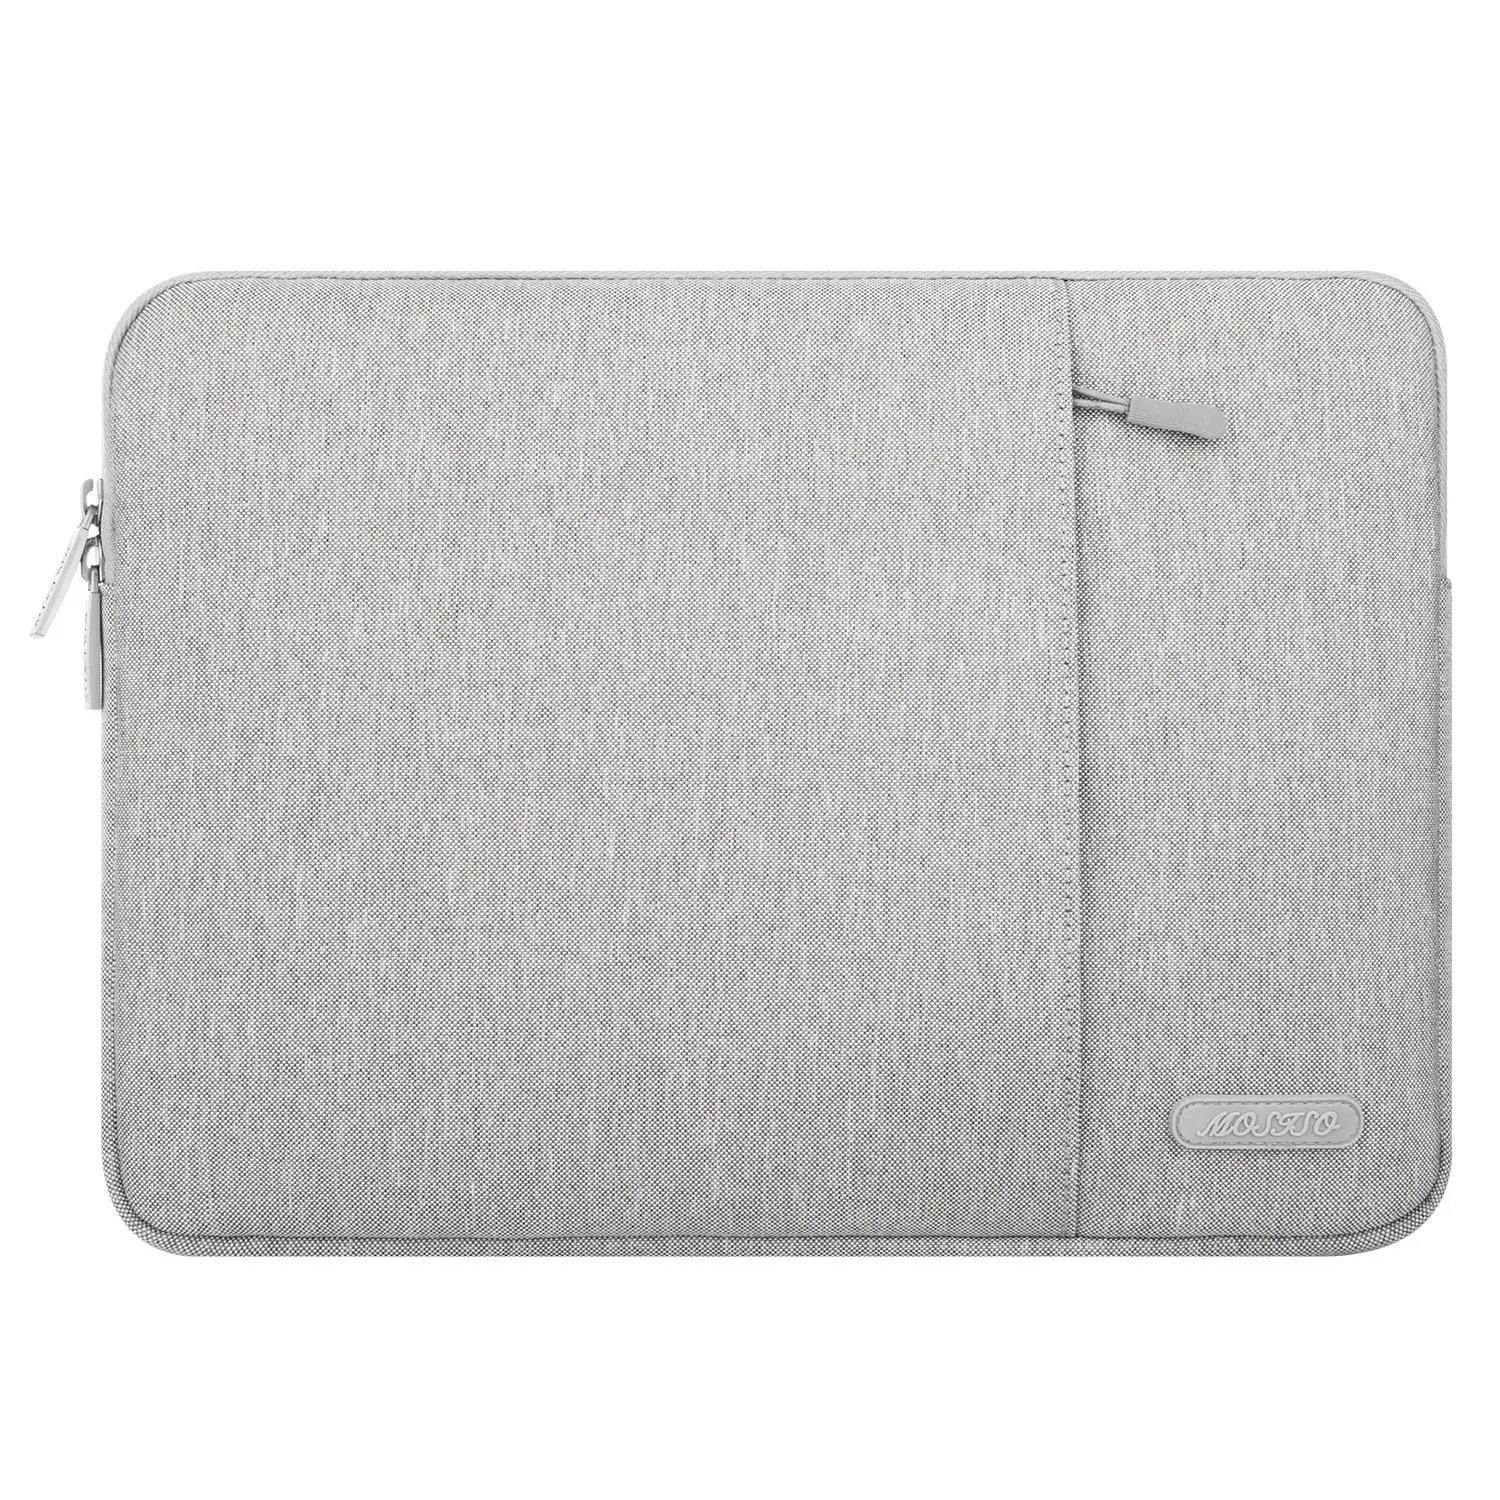 Water Repellent Neoprene Bag 13-13.3 inch Notebook Computer Laptop Case Sleeve